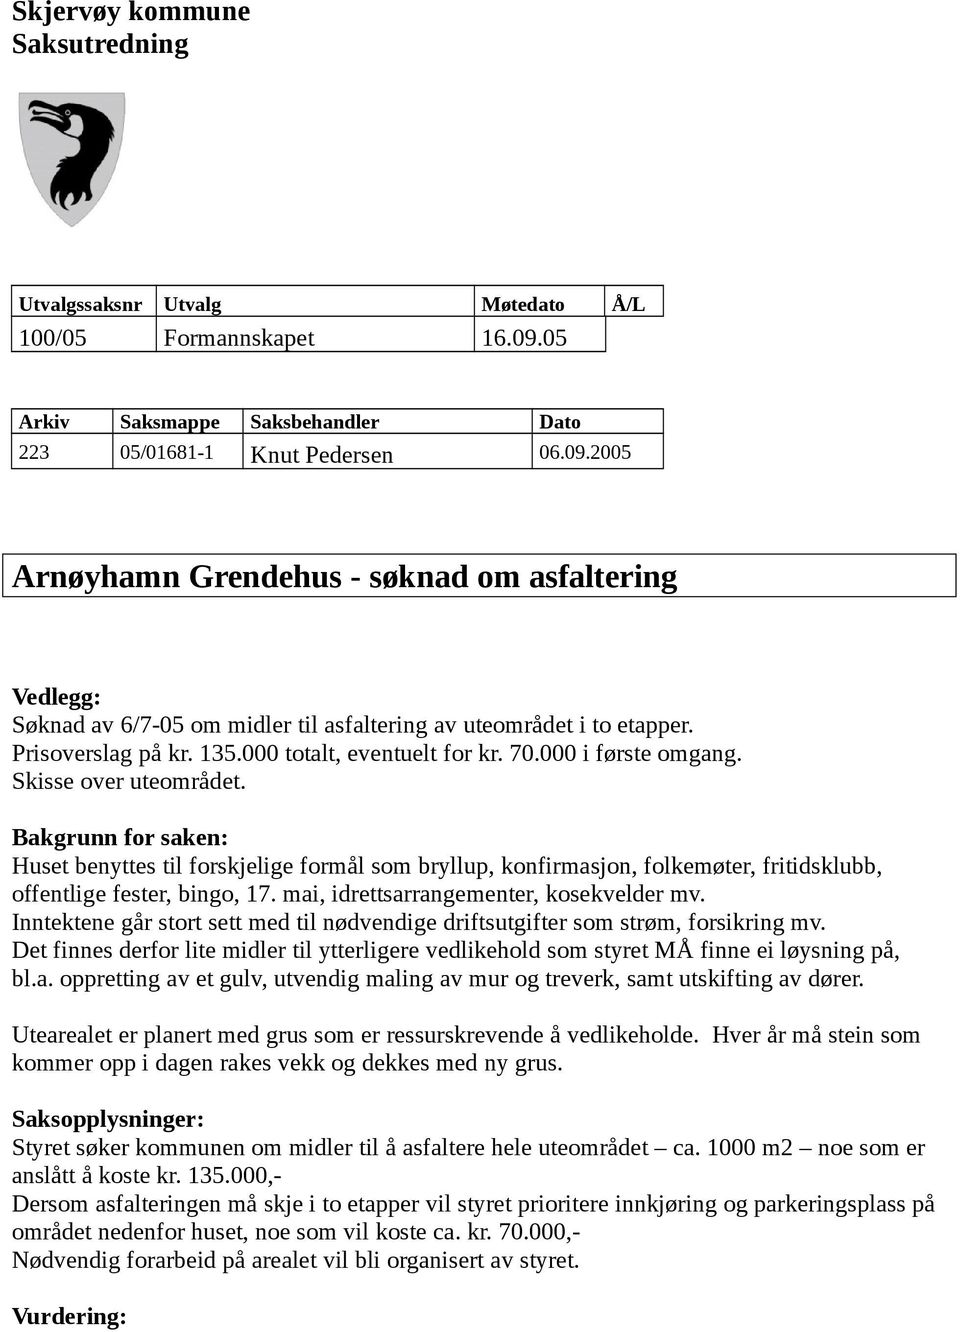 2005 Arnøyhamn Grendehus - søknad om asfaltering Vedlegg: Søknad av 6/7-05 om midler til asfaltering av uteområdet i to etapper. Prisoverslag på kr. 135.000 totalt, eventuelt for kr. 70.